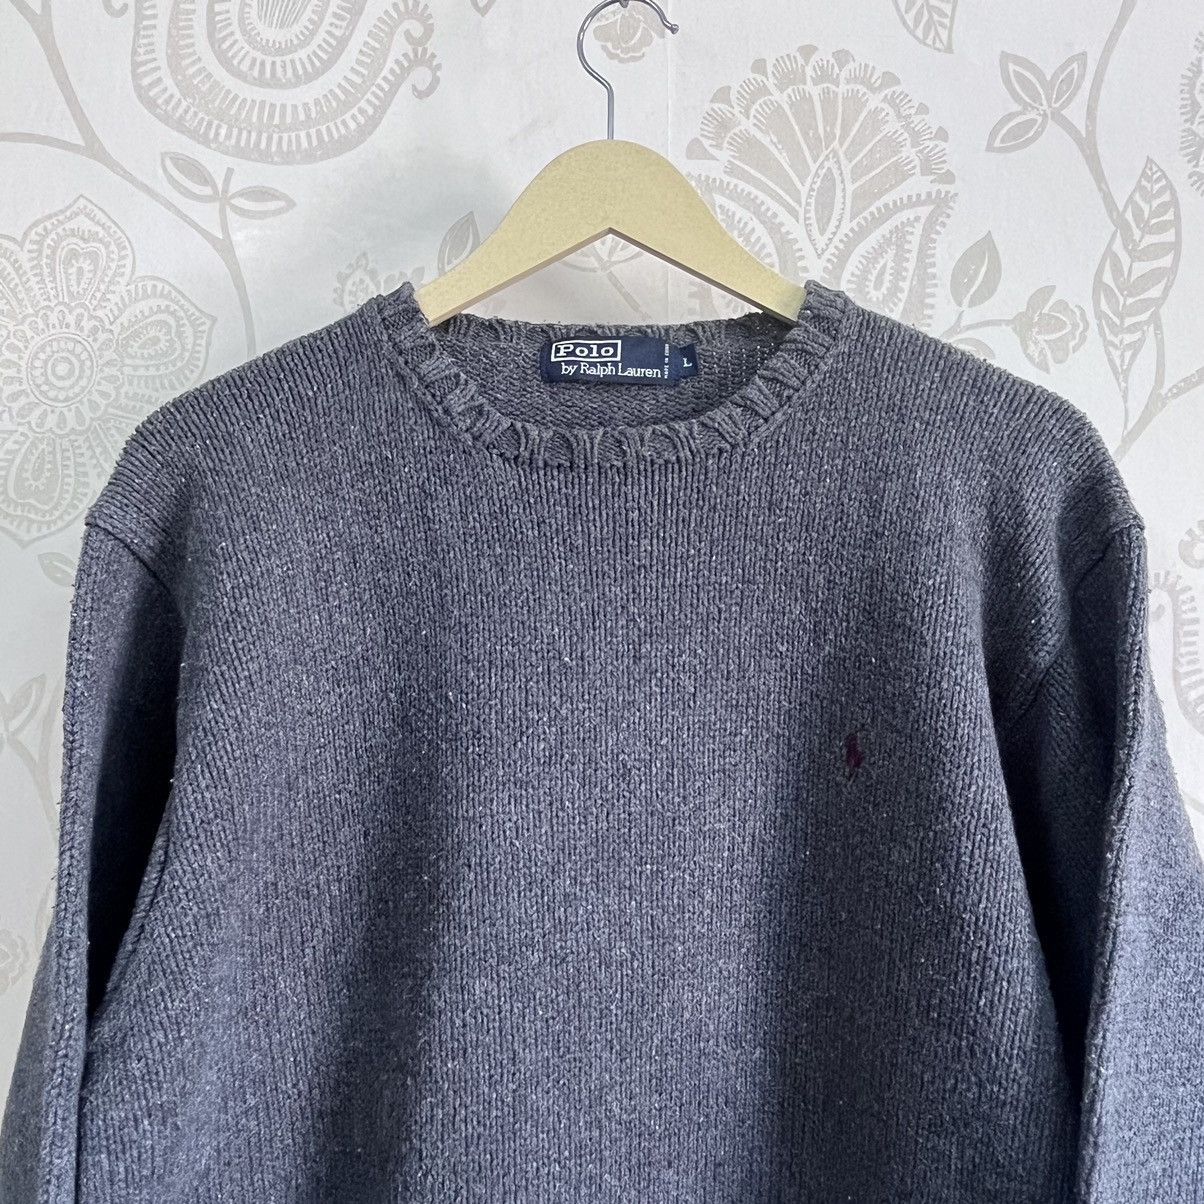 Polo Ralph Lauren Knitwear Sweater Vintage - 18